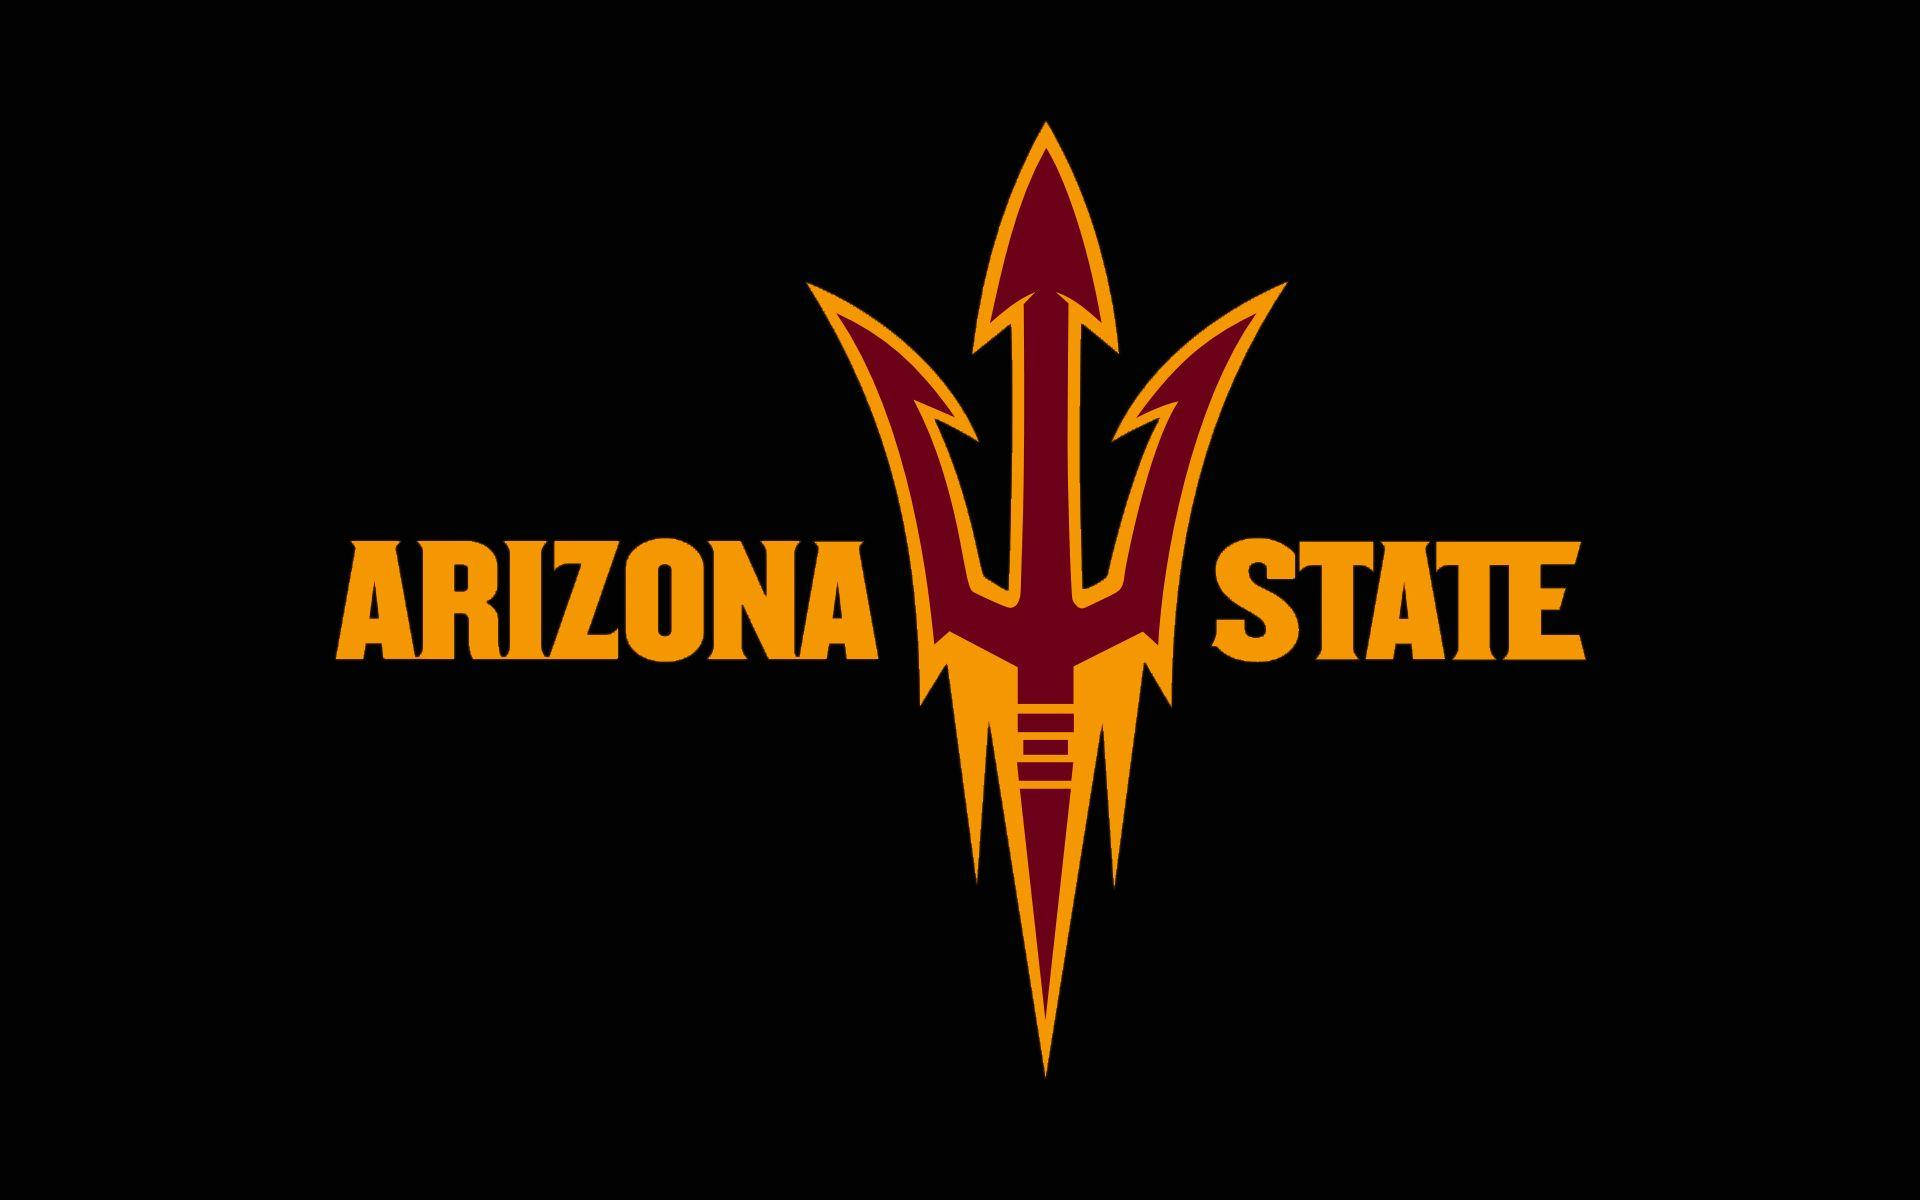 Logotipode La Universidad Estatal De Arizona En Colores Amarillo Y Rojo. Fondo de pantalla